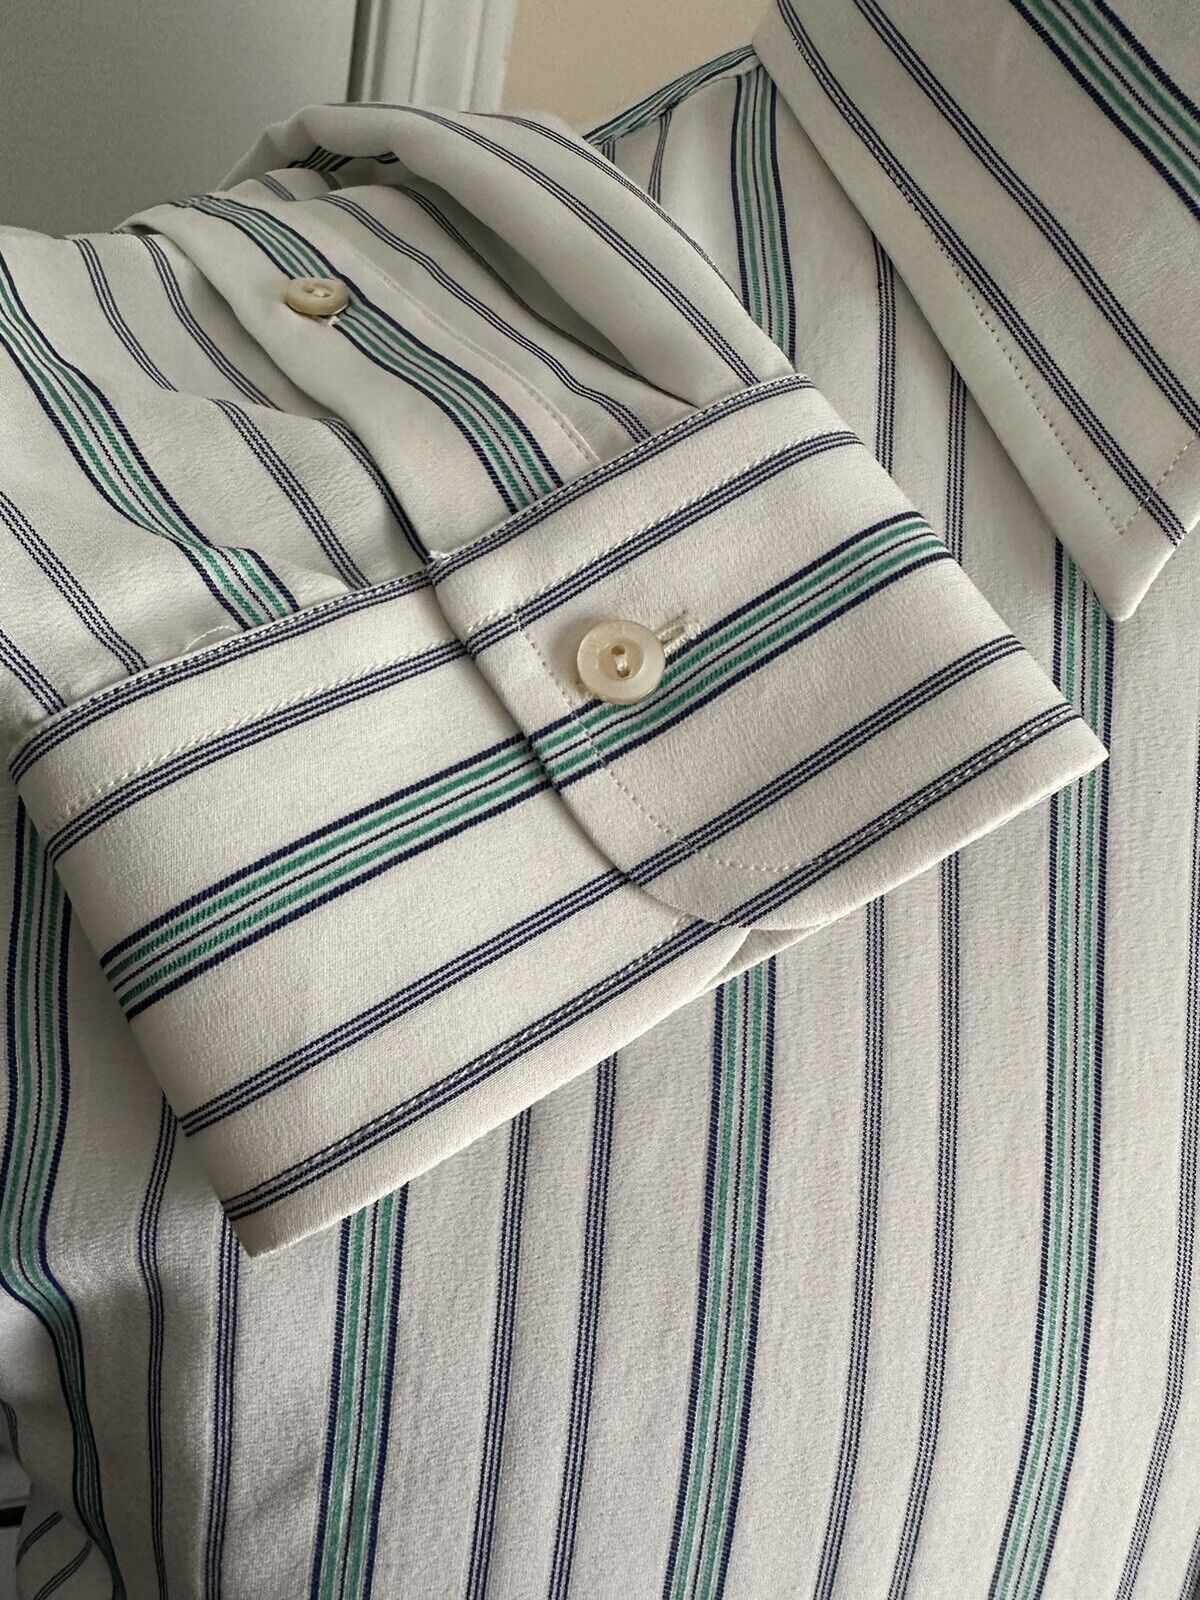 Neues Gucci Herren-Seidenhemd im Wert von 1200 $, Farbe gebrochenes Weiß/Grün, 39/15,5, Italien